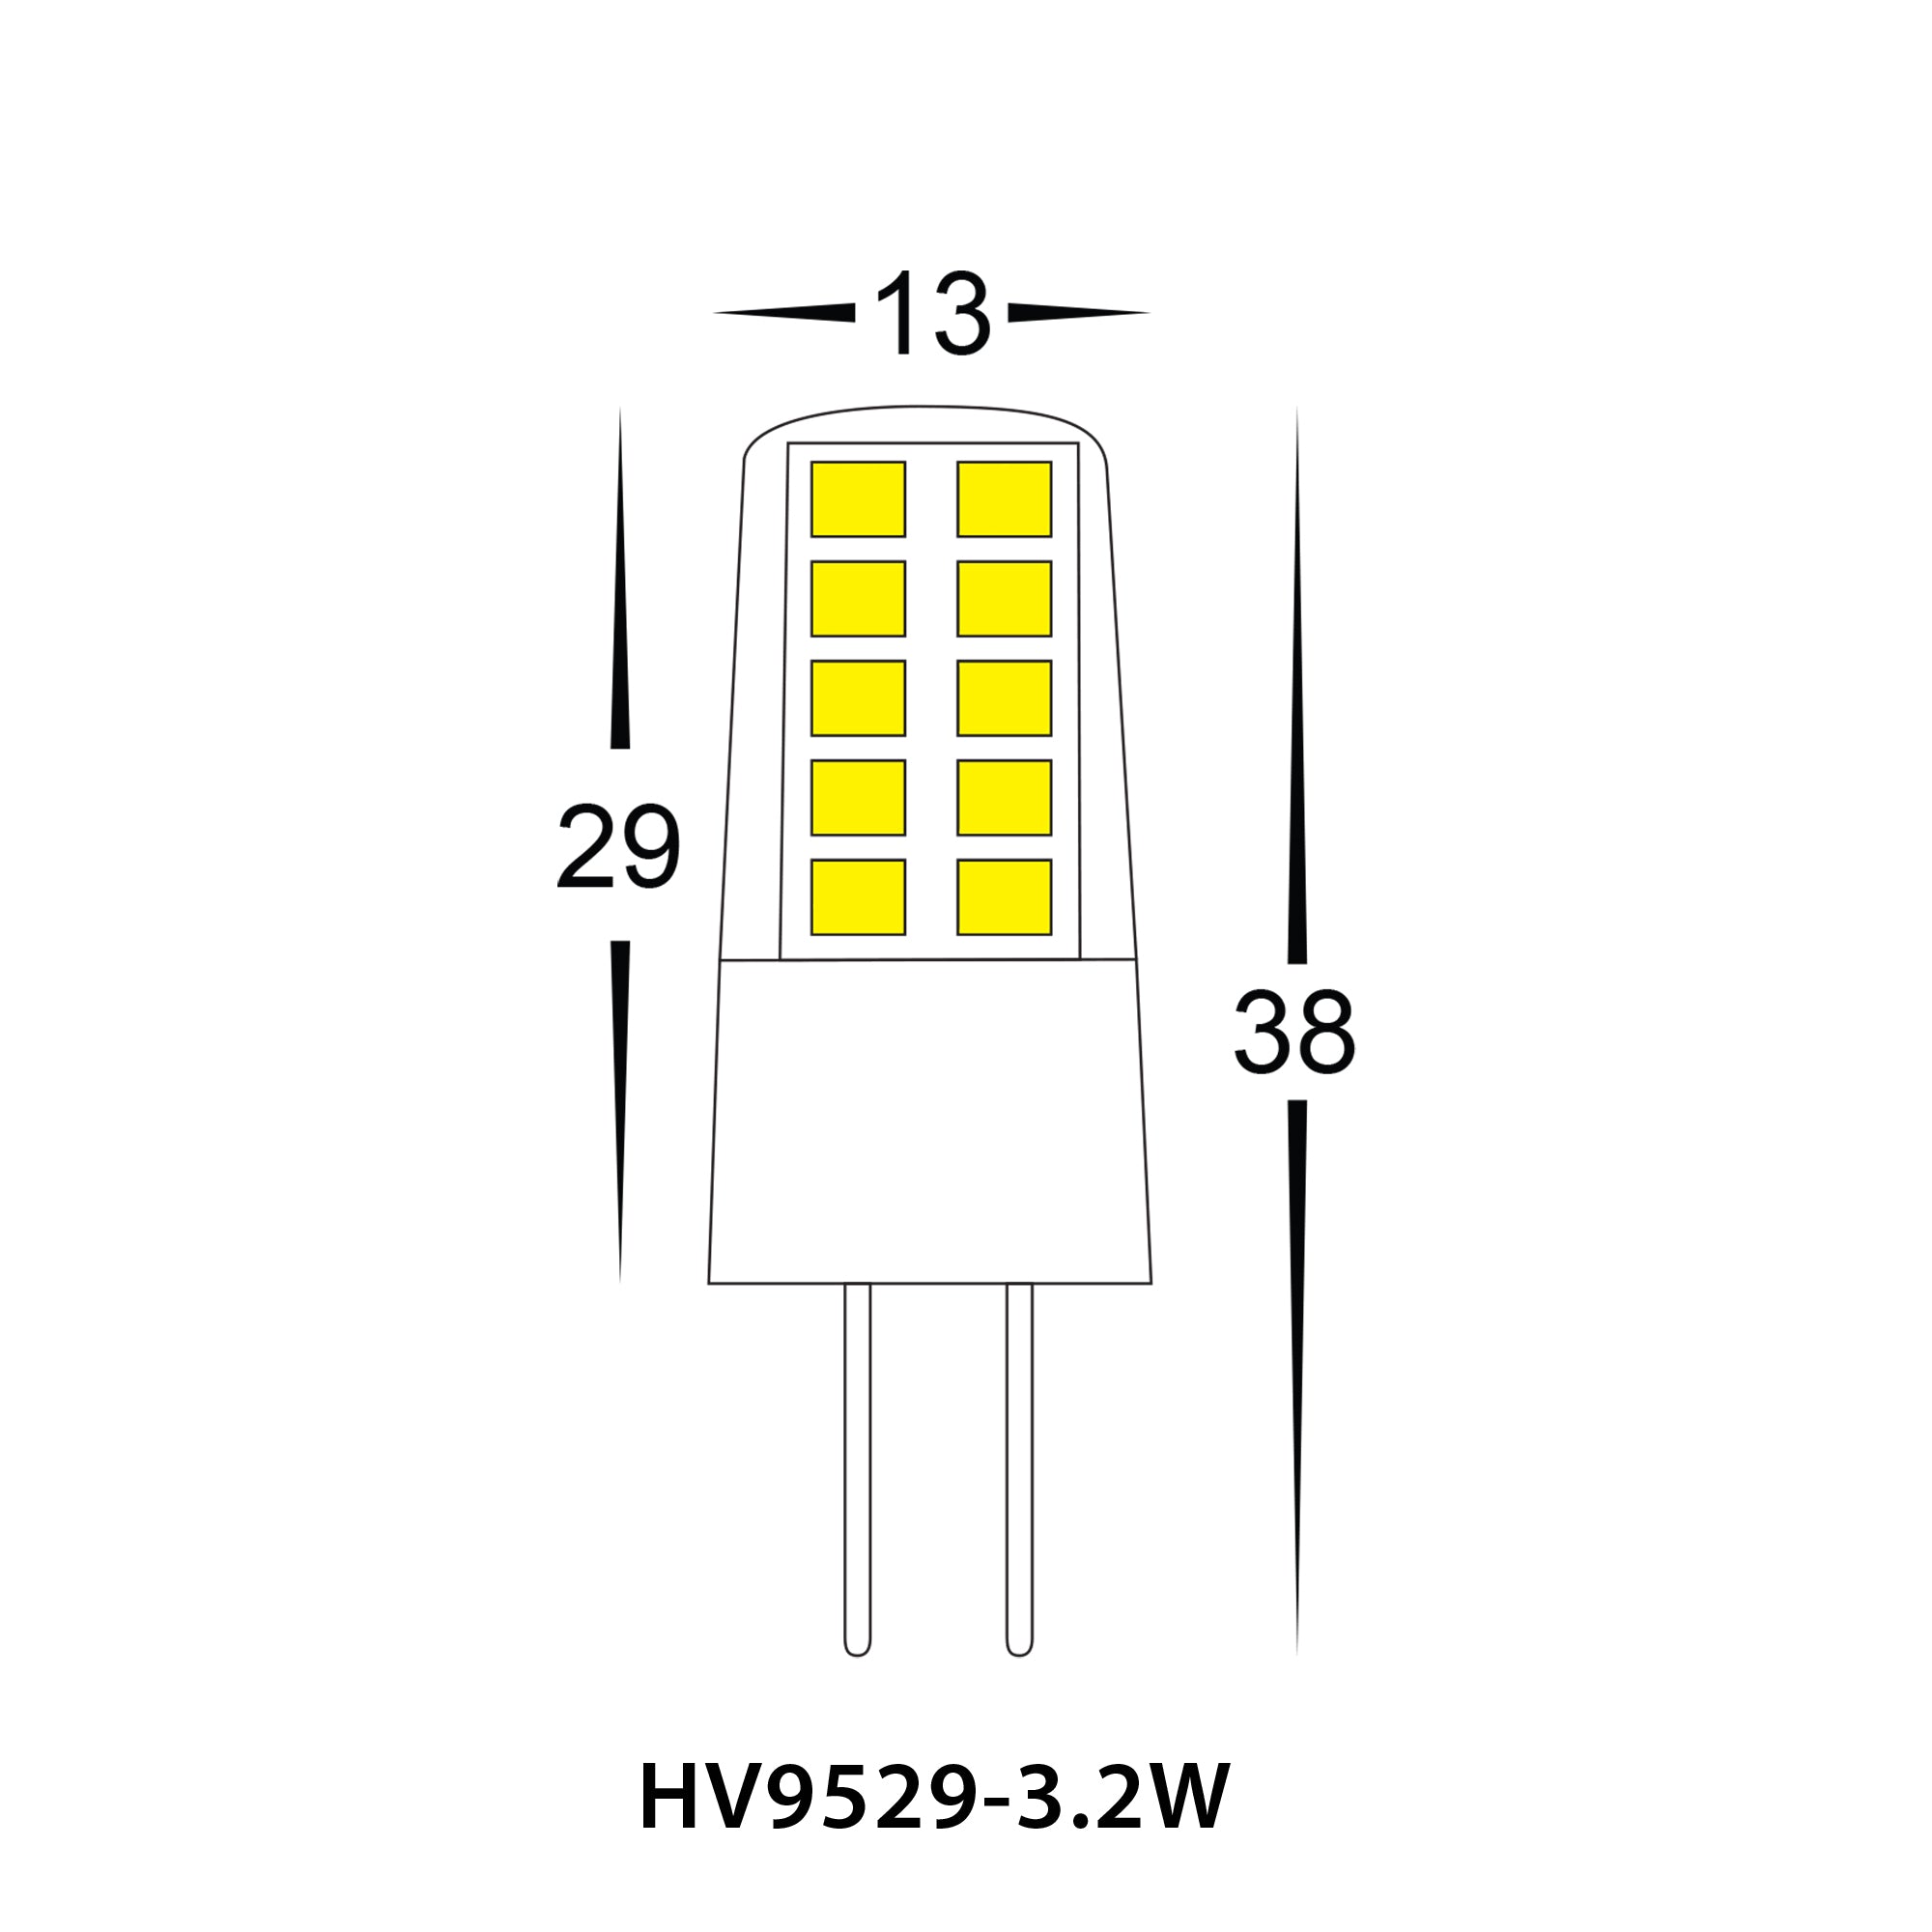 HV9523-3.2W-HV9529-3.2W - 3.2w G4 LED Bi Pin Globe